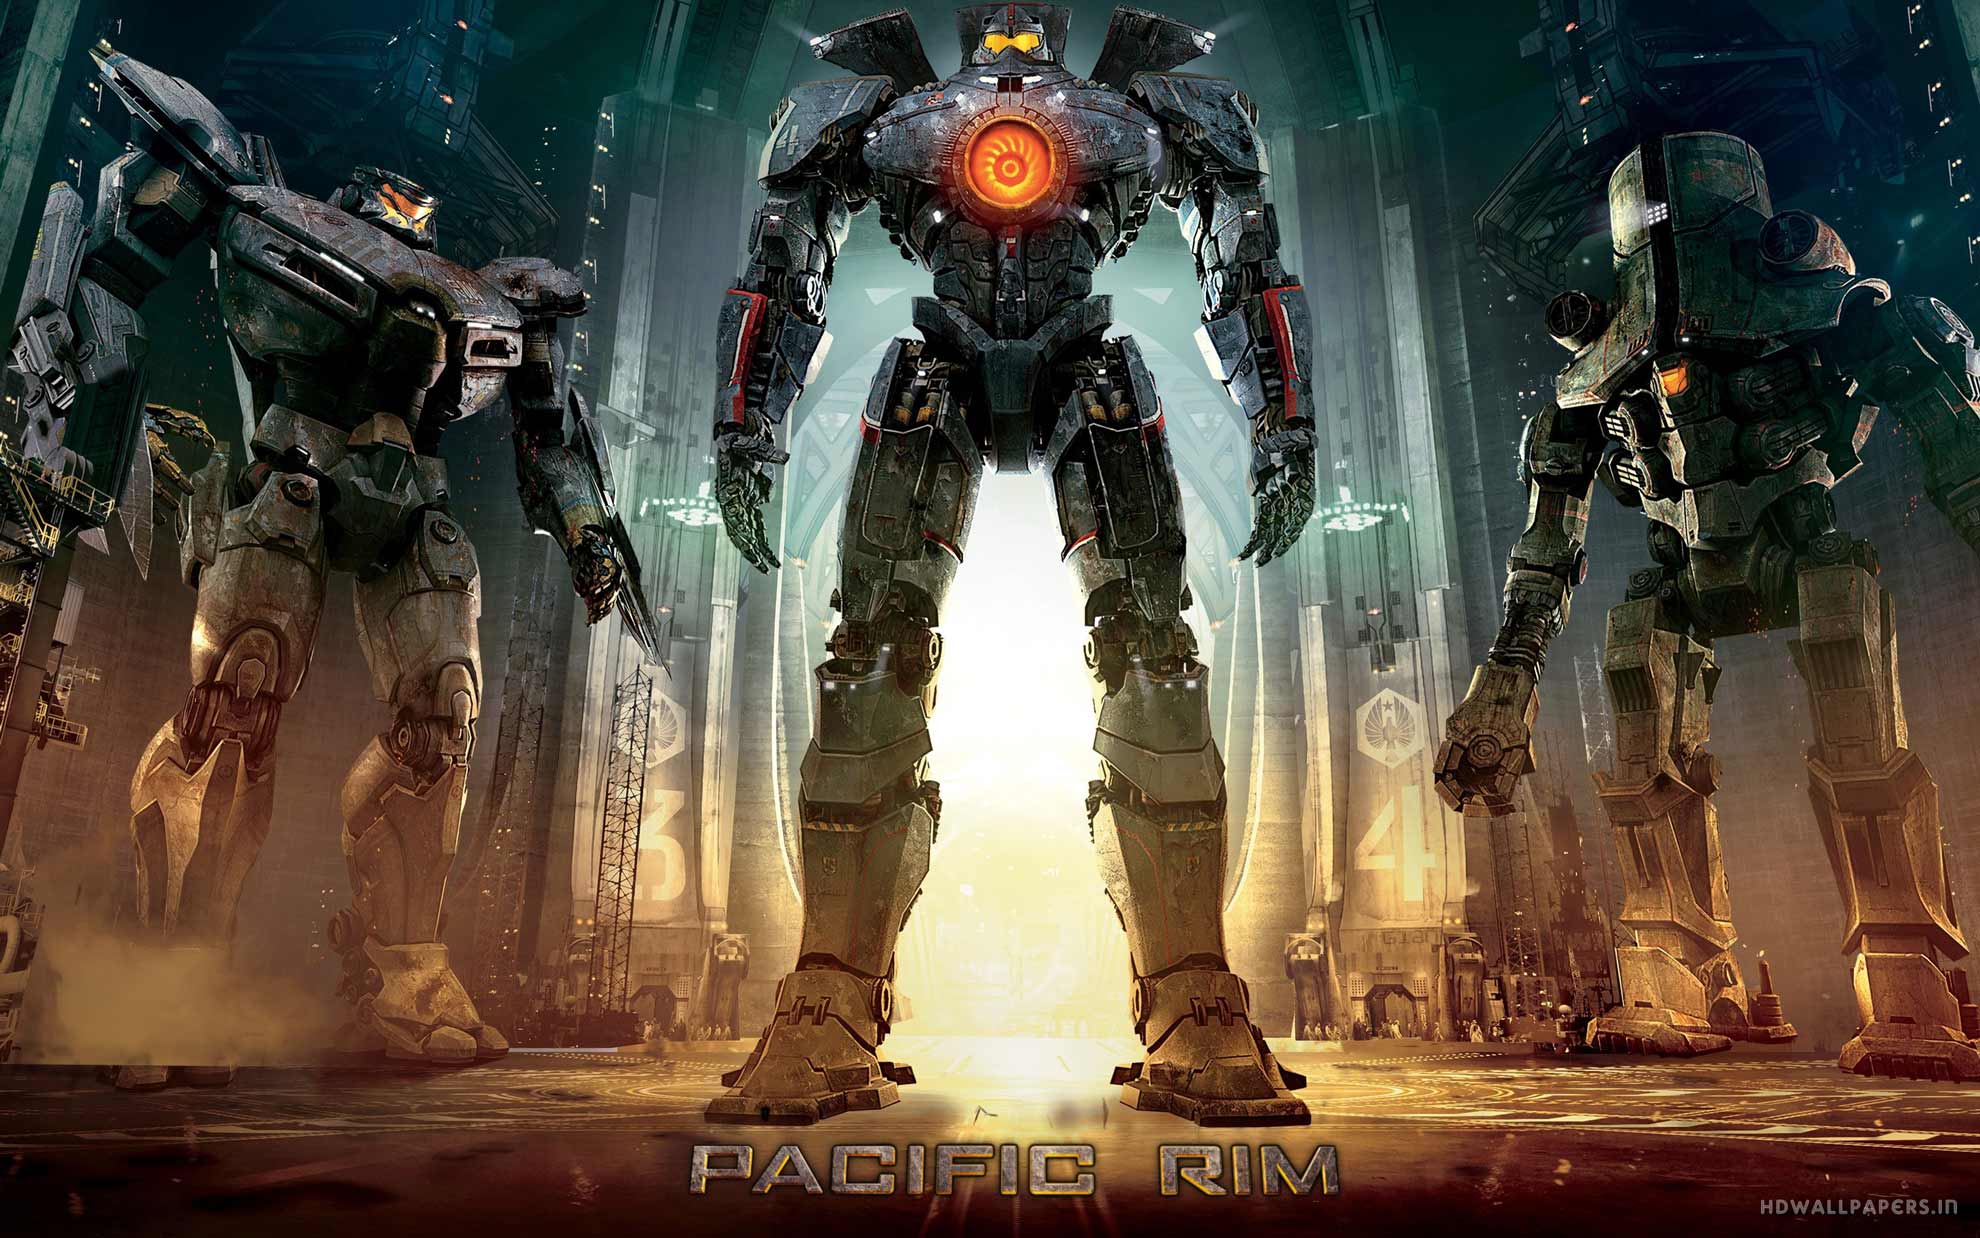 pacific rim full movie download megashare